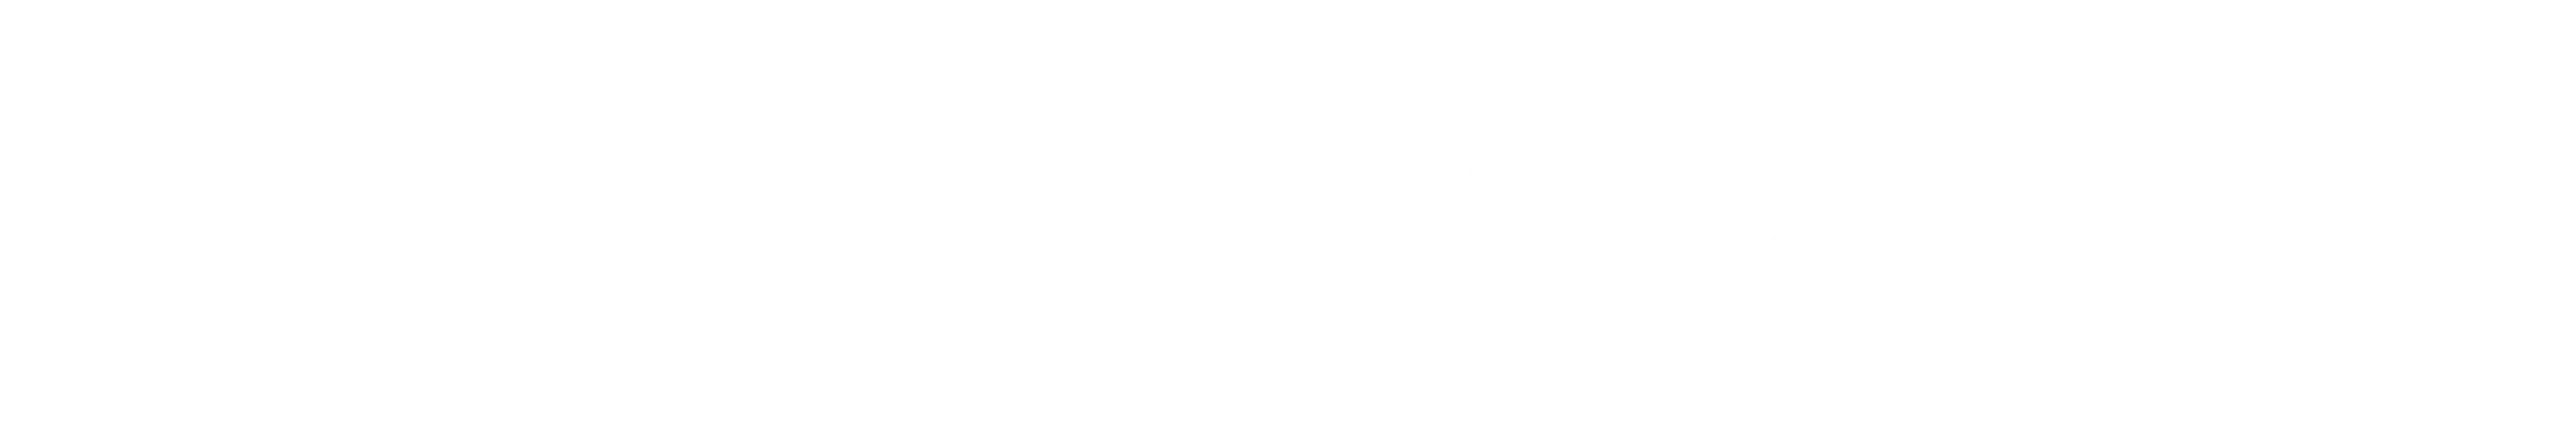 Perfume Shop Logo White